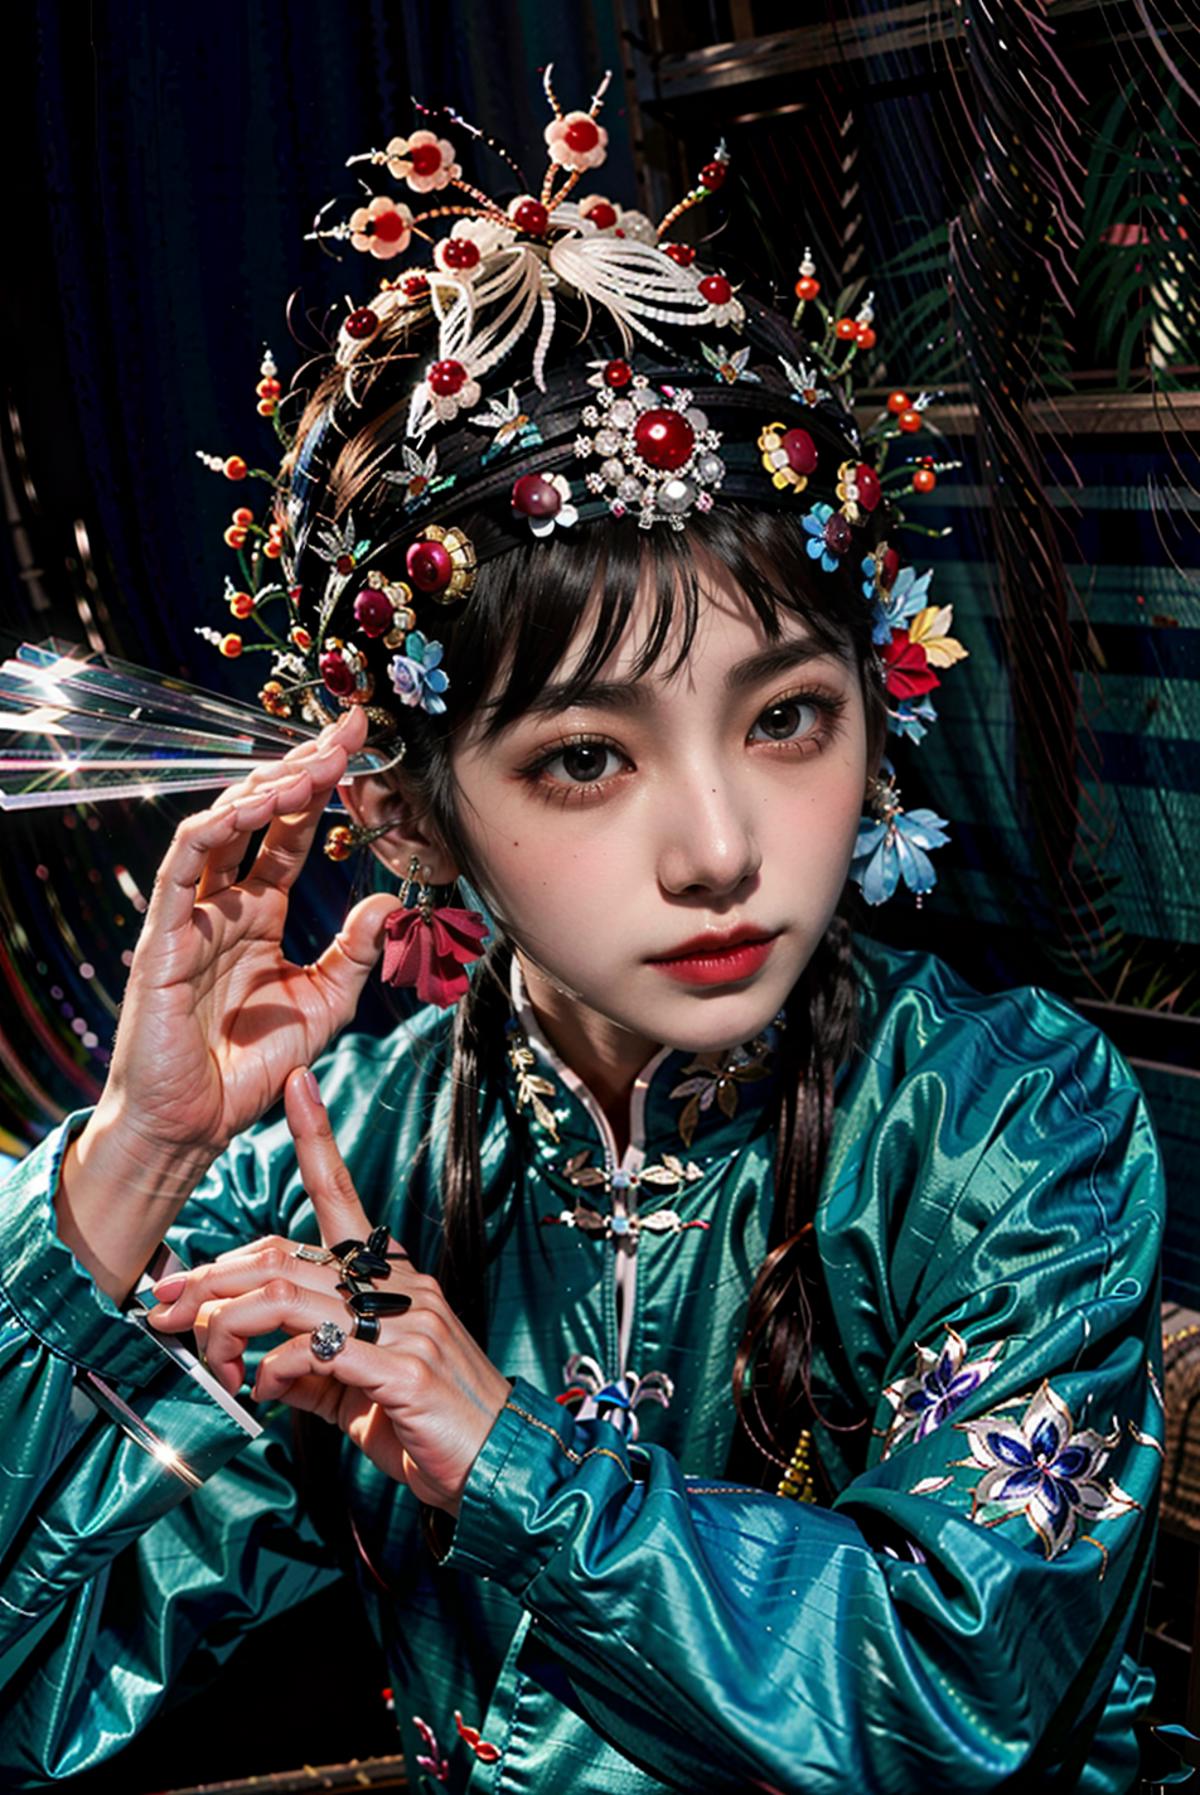 xifu 戏服(Chinese Peking Opera costumes) image by yoyochen2023